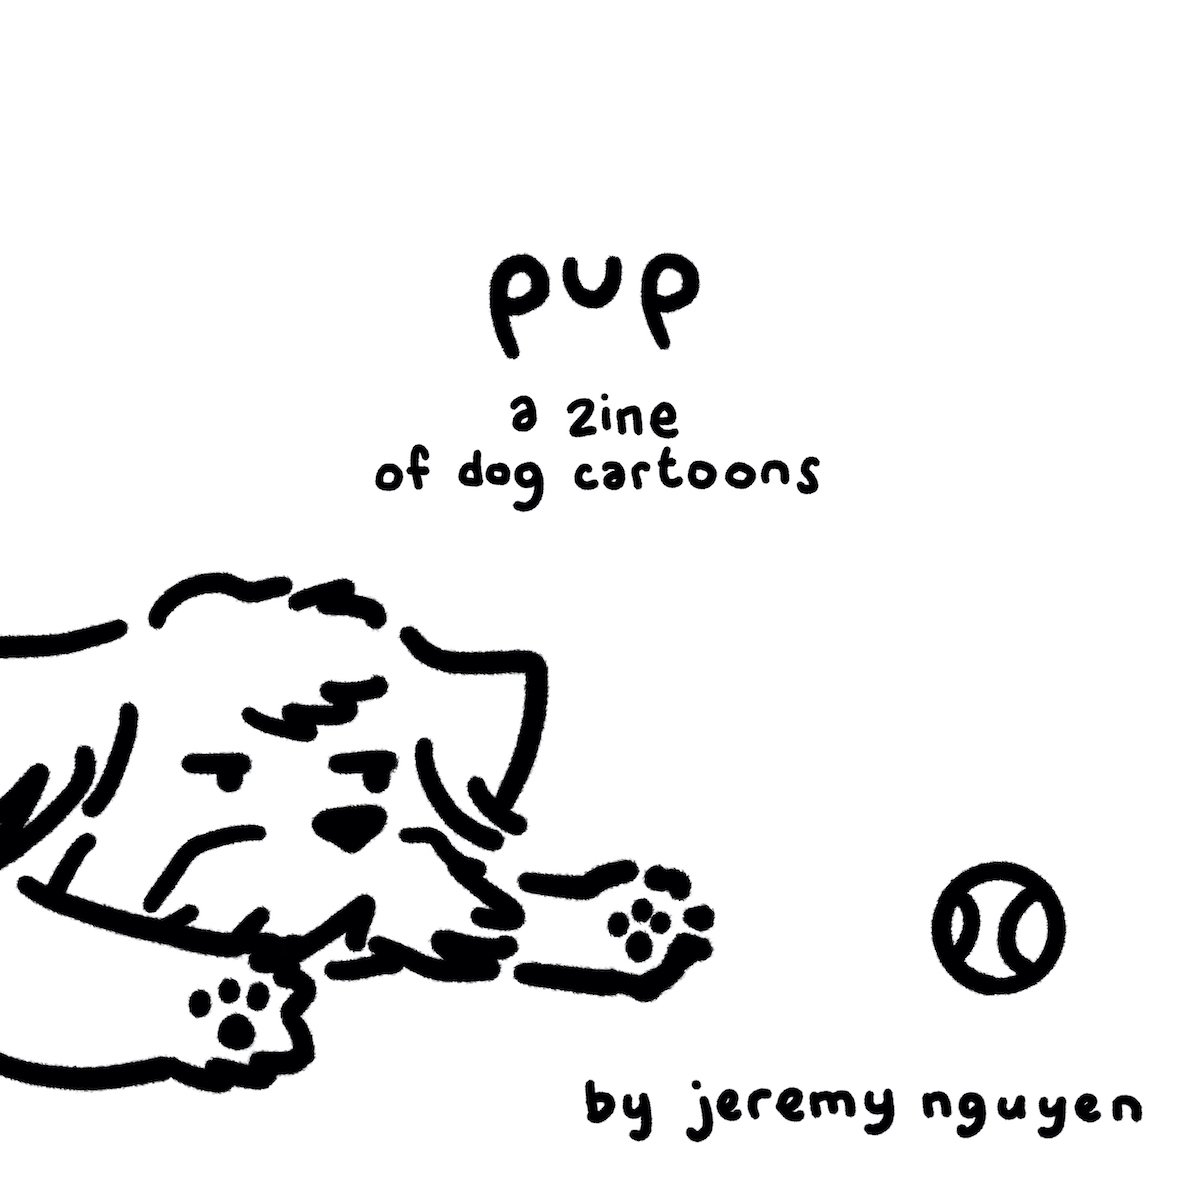 Image of pup - a zine of dog cartoons